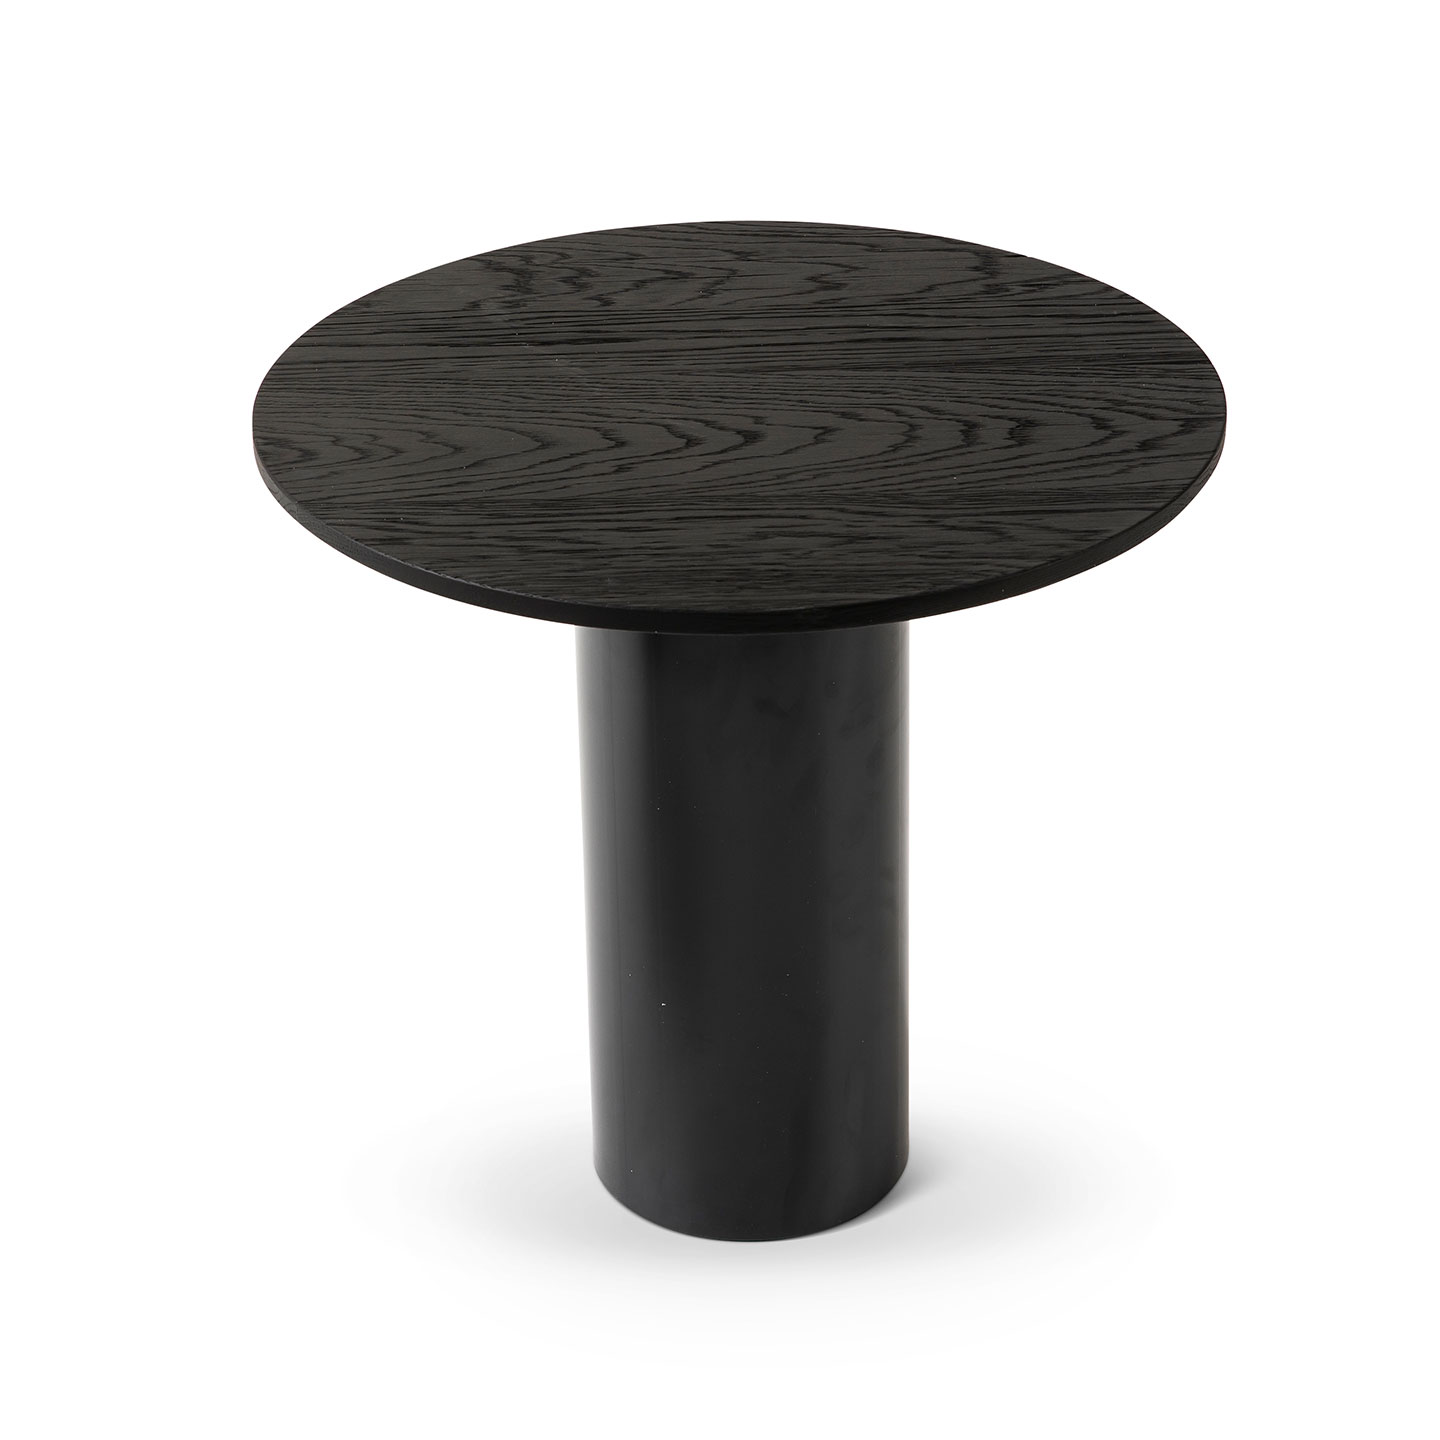 Table Mush Haworth en chêne massif dans les coloris cognac et carbone, et pied rond noir